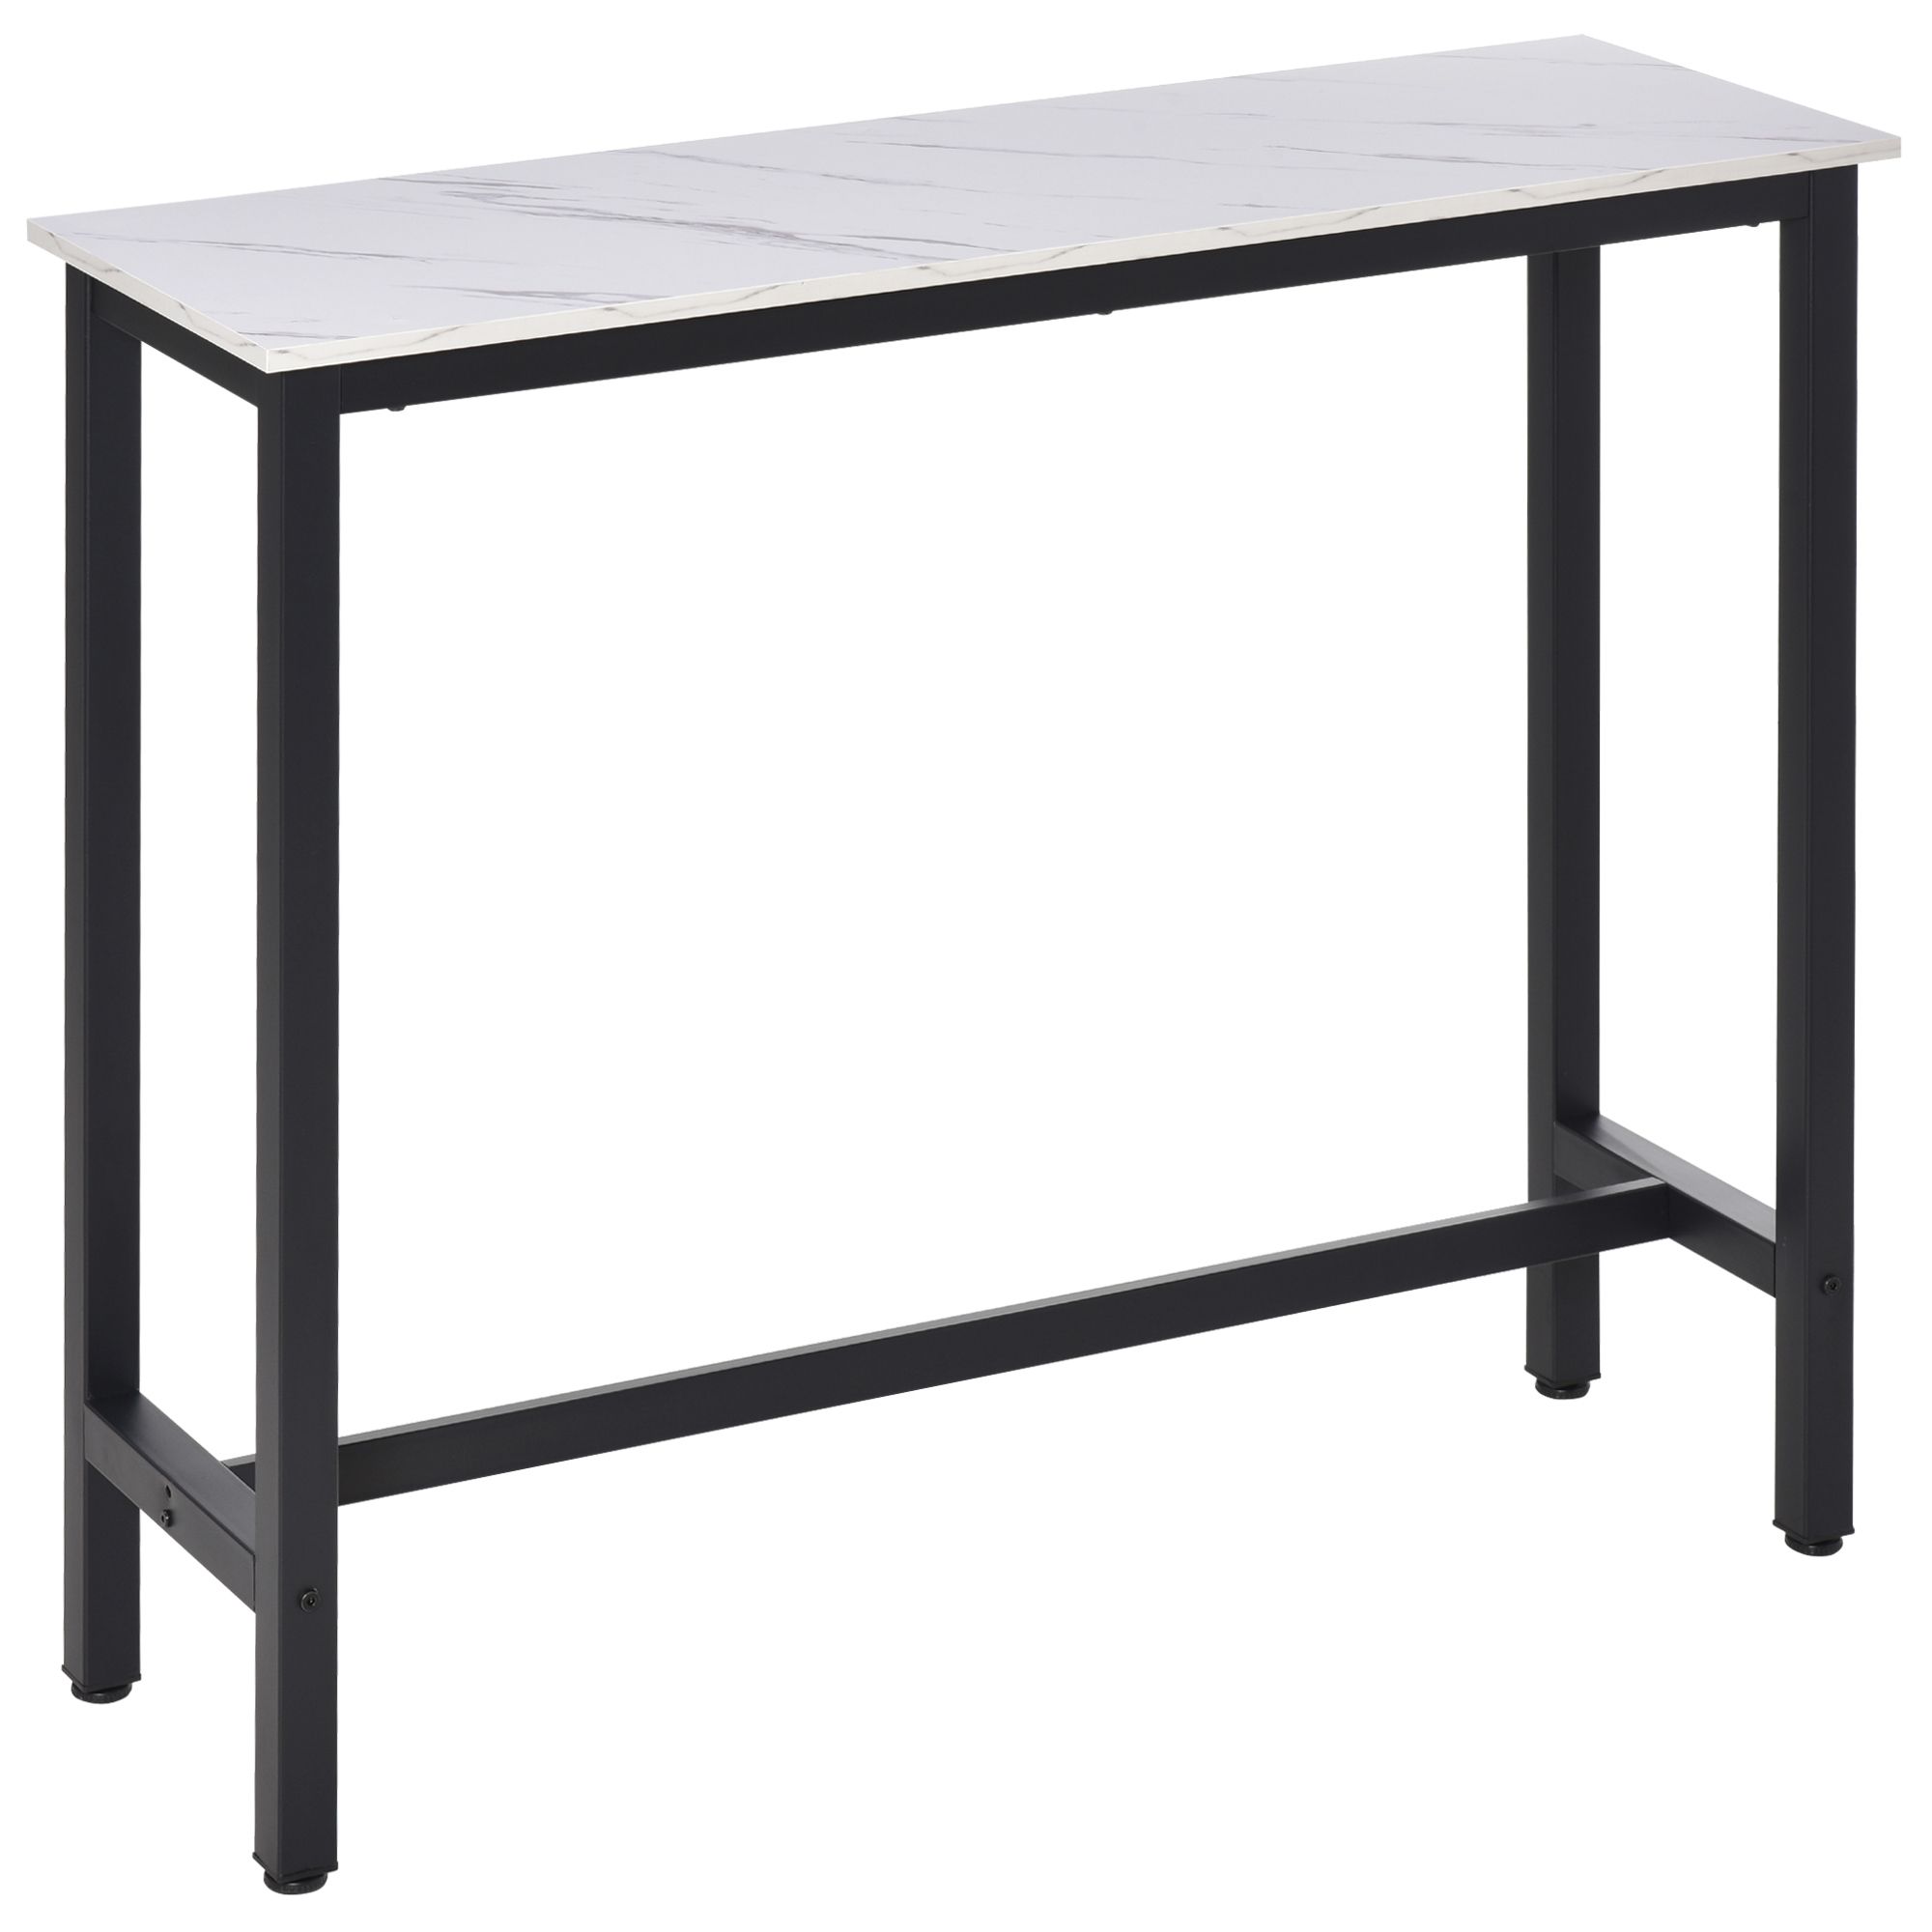 Table de bar 100H cm châssis acier noir plateau aspect marbre blanc